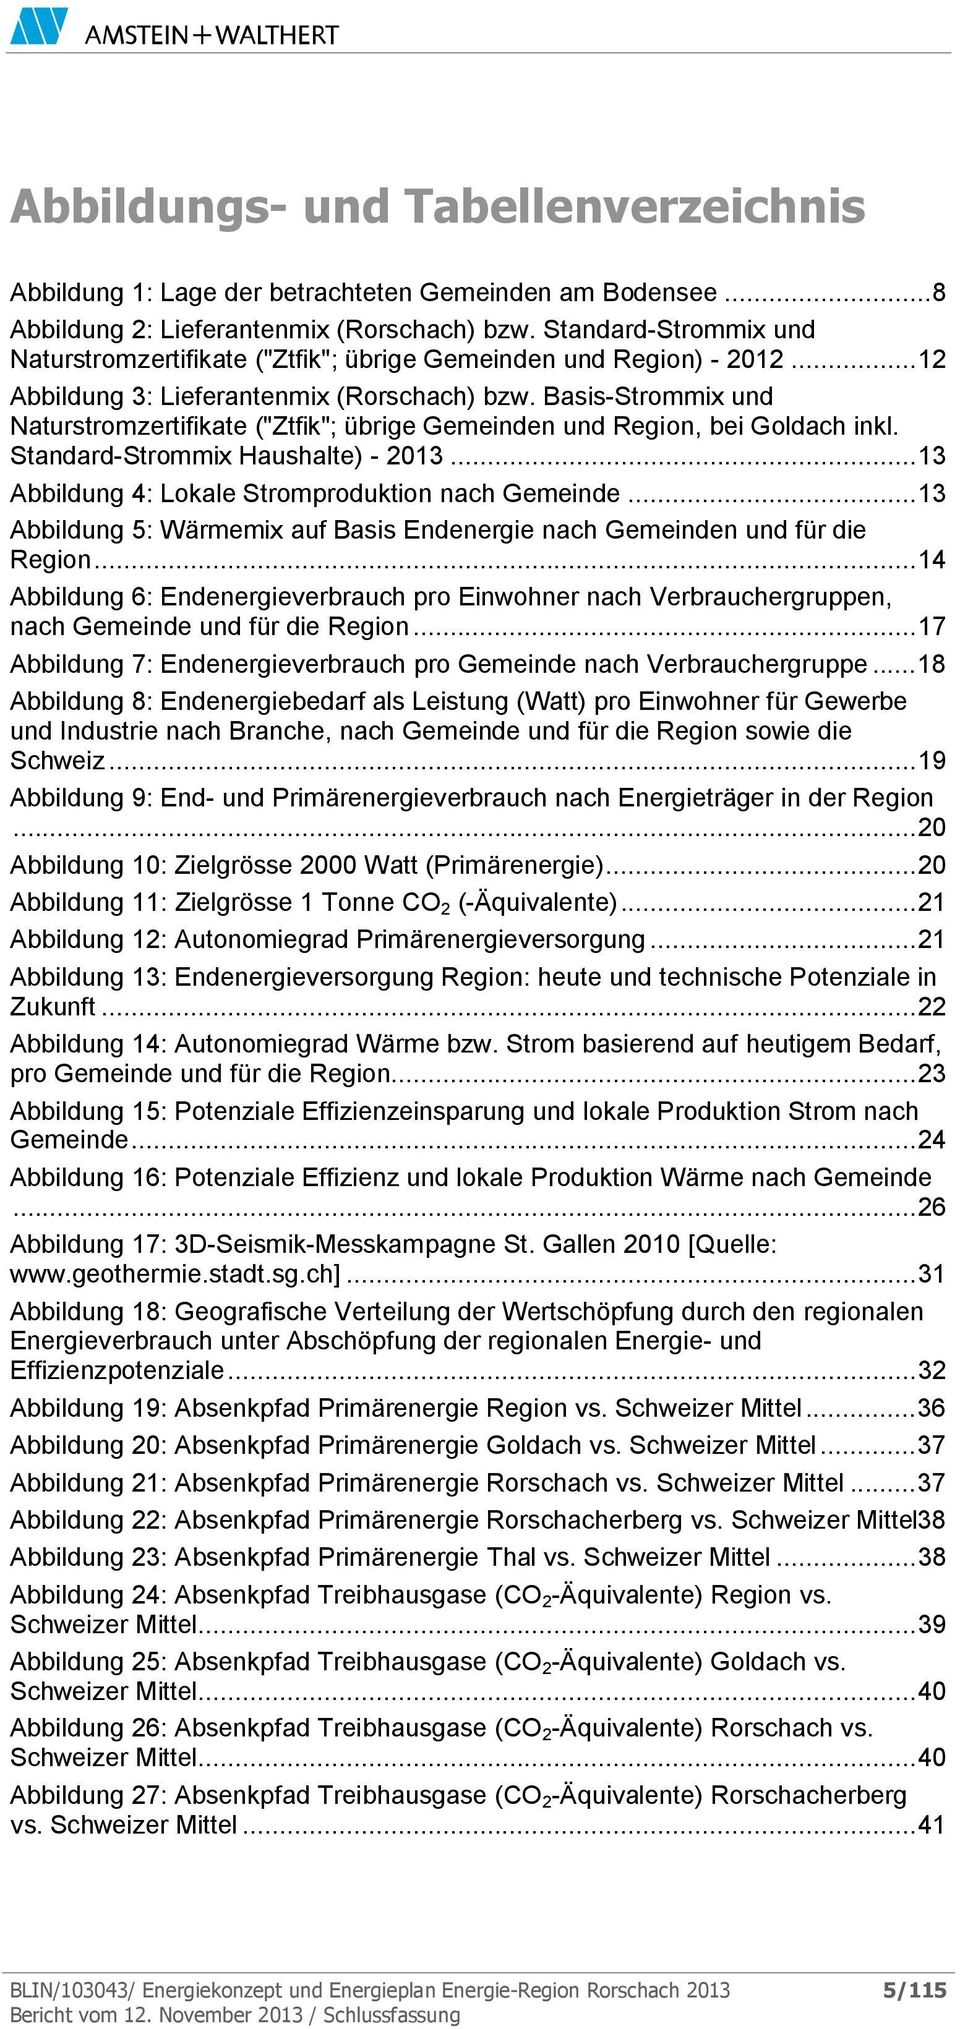 Basis-Strommix und Naturstromzertifikate ("Ztfik"; übrige Gemeinden und Region, bei Goldach inkl. Standard-Strommix Haushalte) - 2013... 13 Abbildung 4: Lokale Stromproduktion nach Gemeinde.